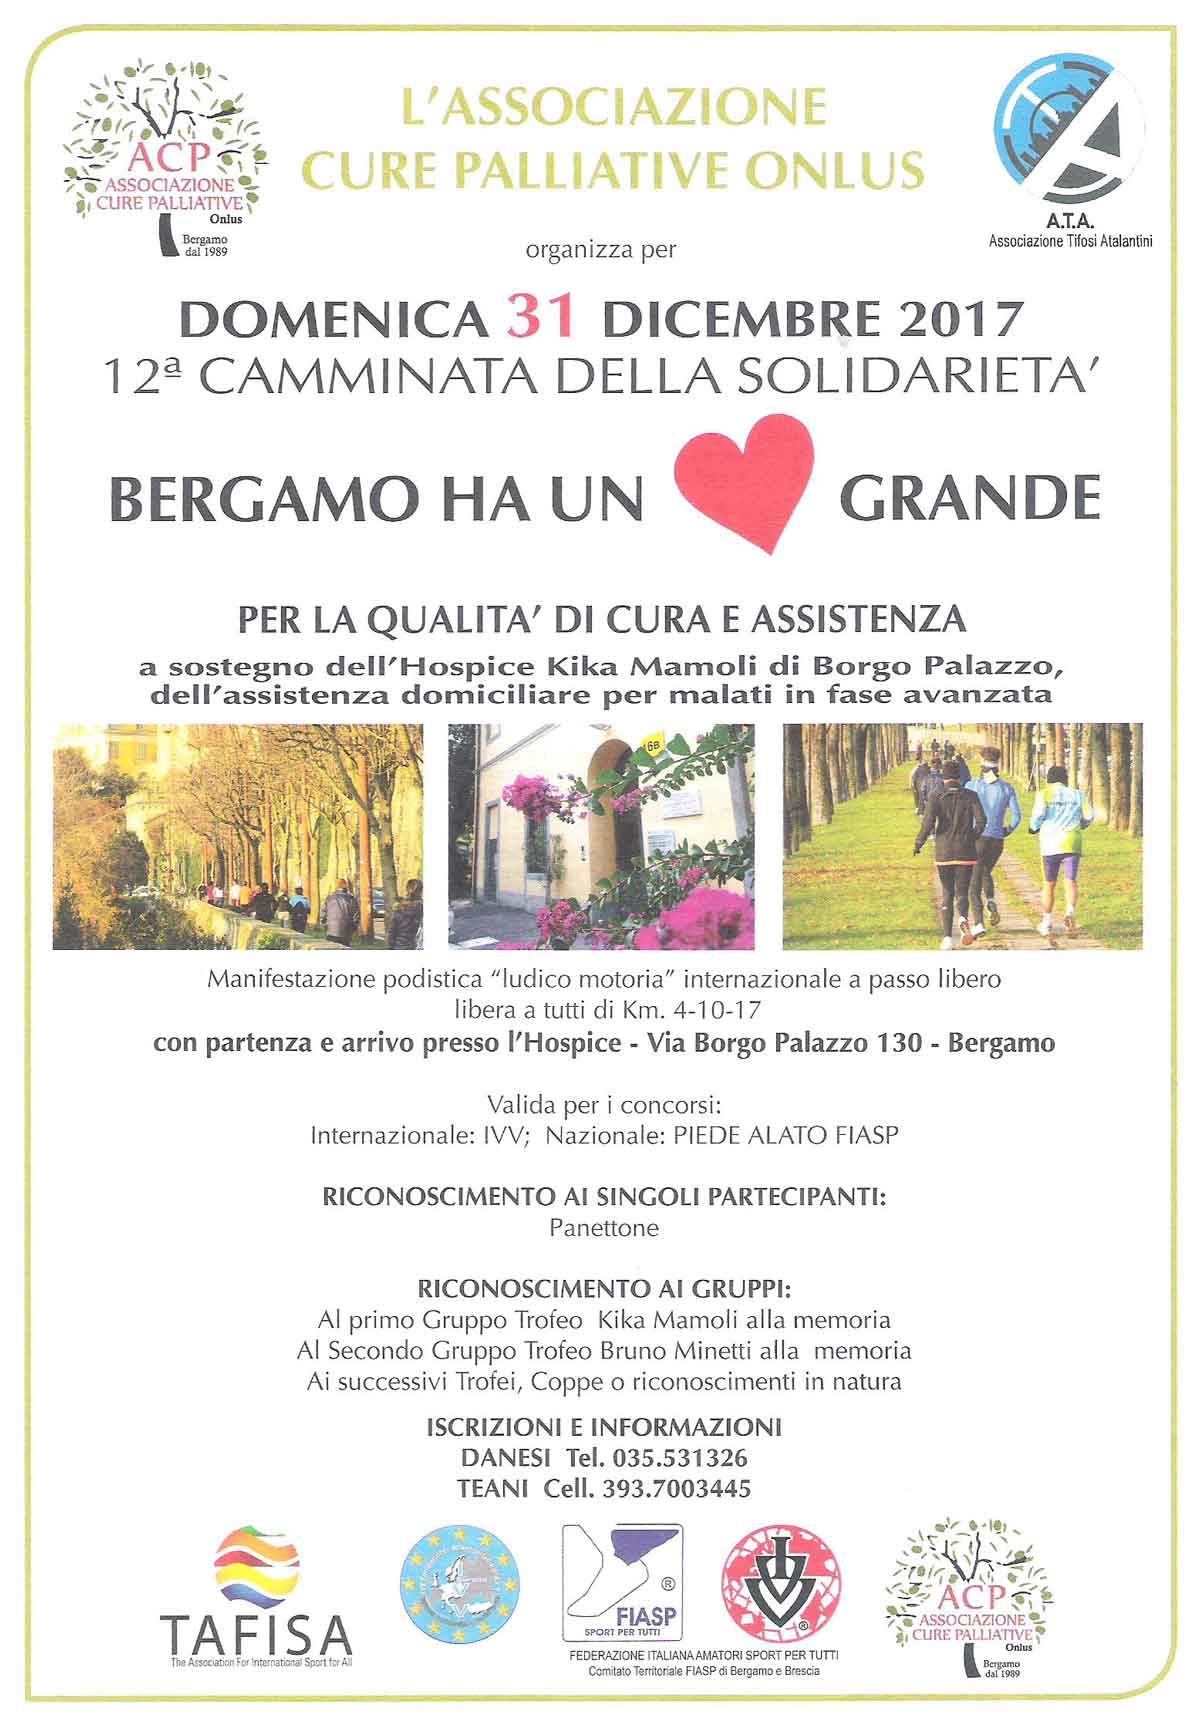 12a Camminata della Solidarietà Bergamo ha un Cuore Grande